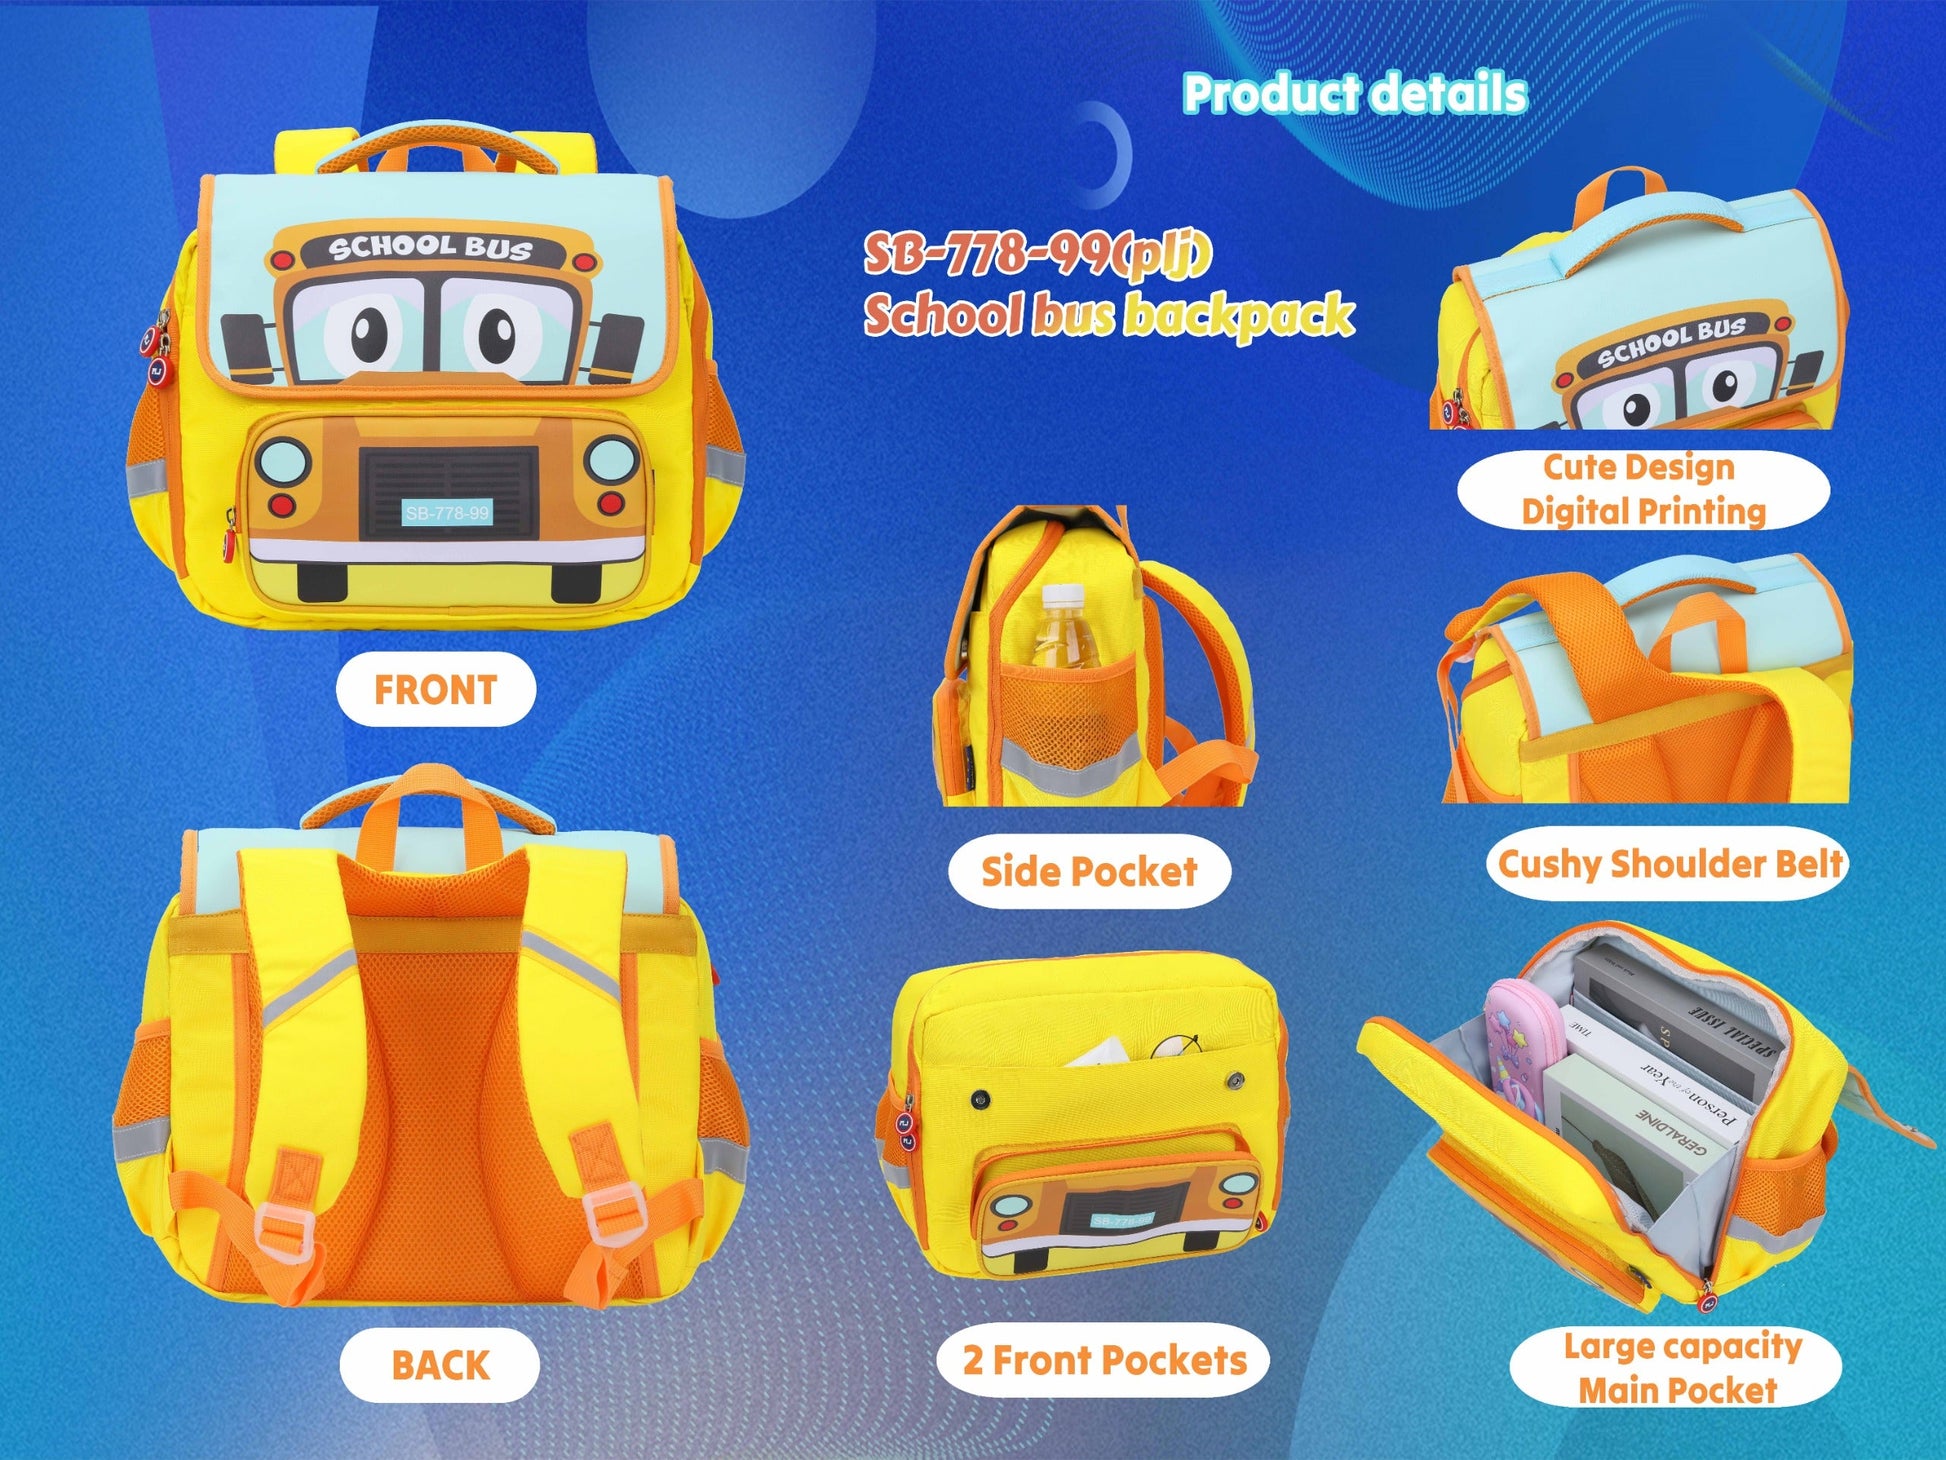 School Bus-Design Rectangular Shape Backpack for Kids